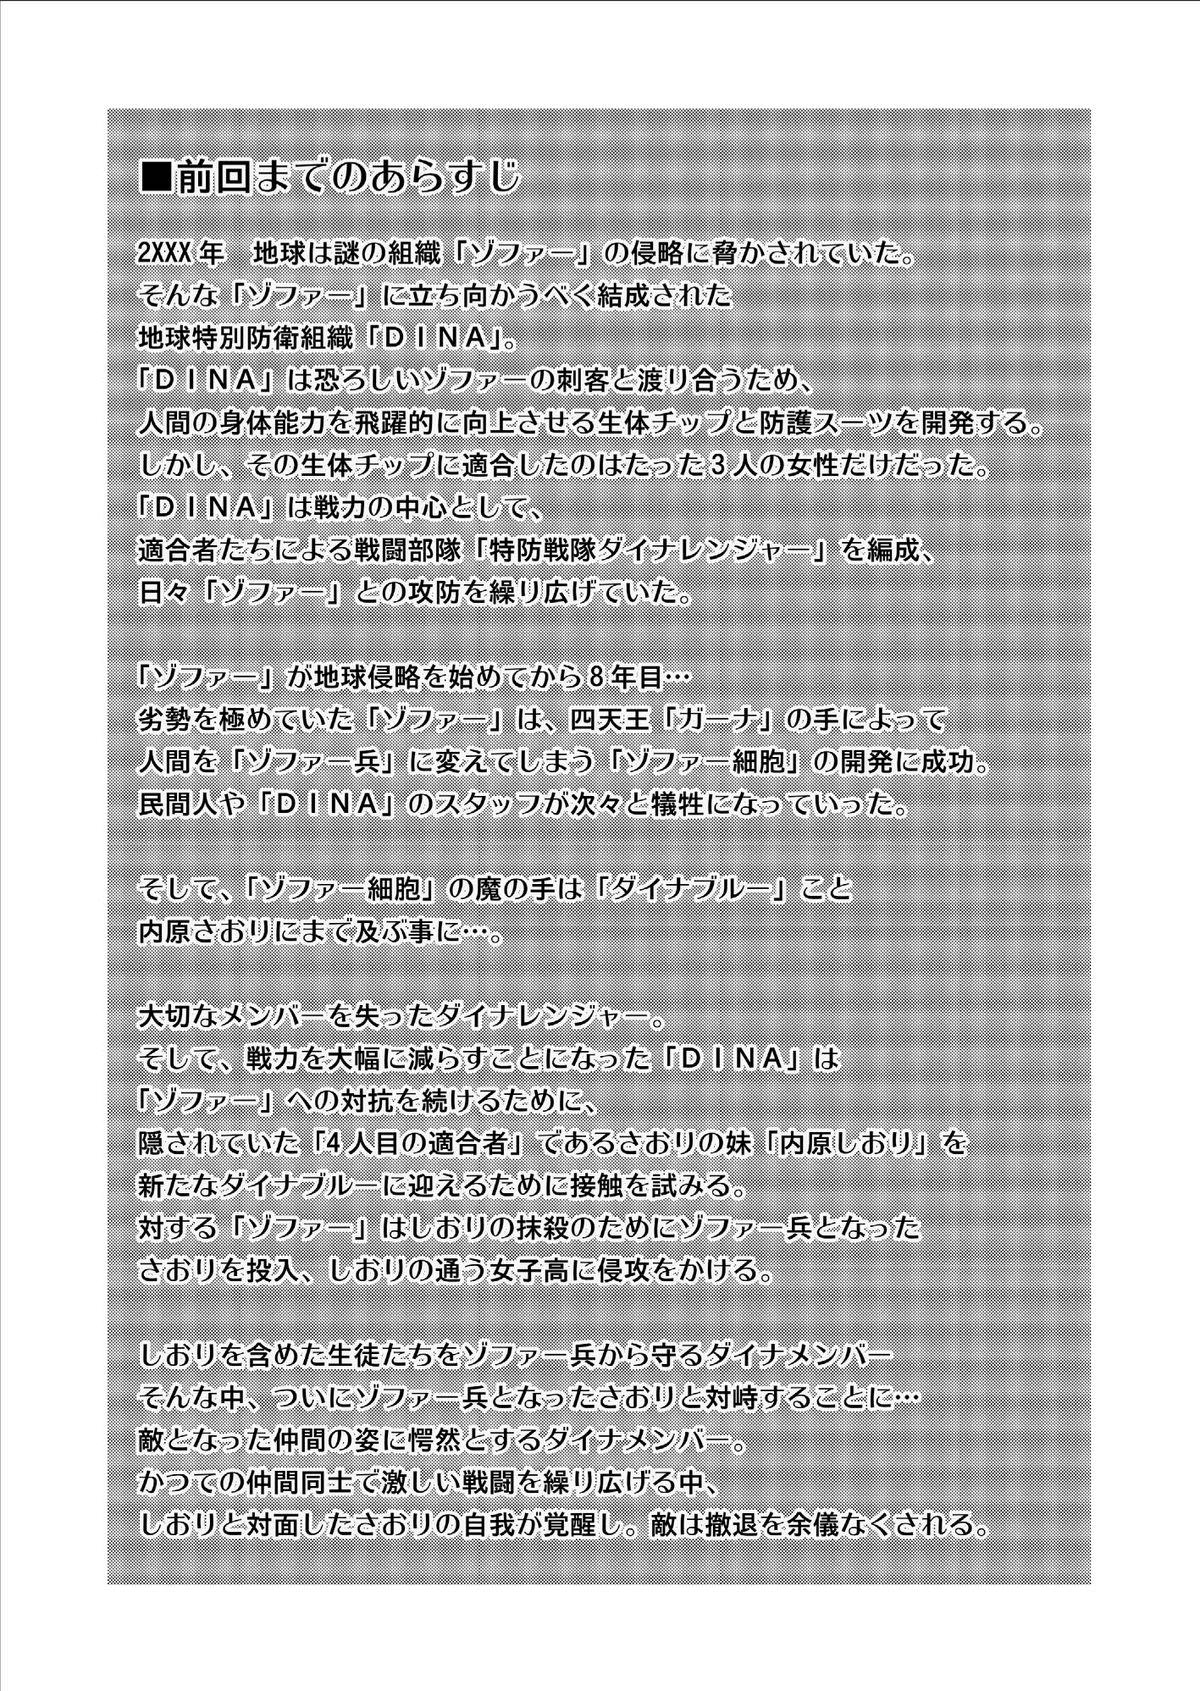 Hidden Dinaranger Vol. 9-11 Verification - Page 2